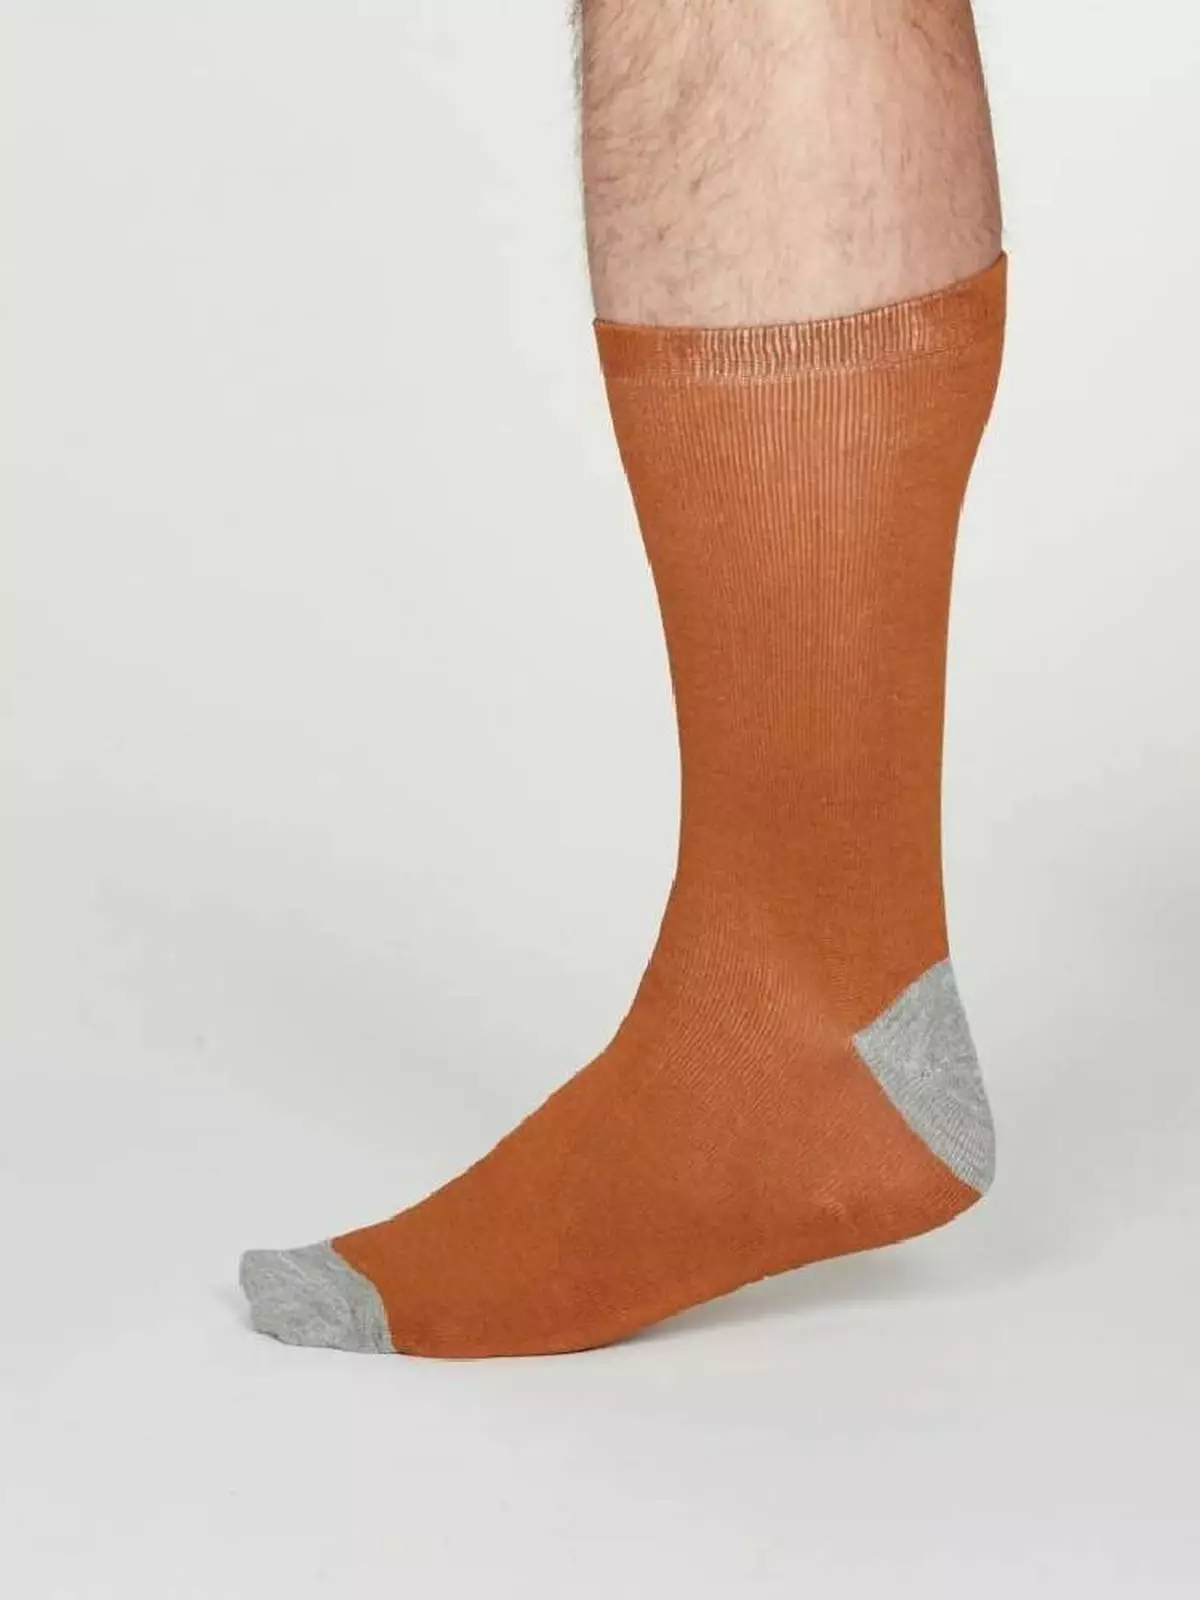 Herren-Socken Modell: Solid Jack